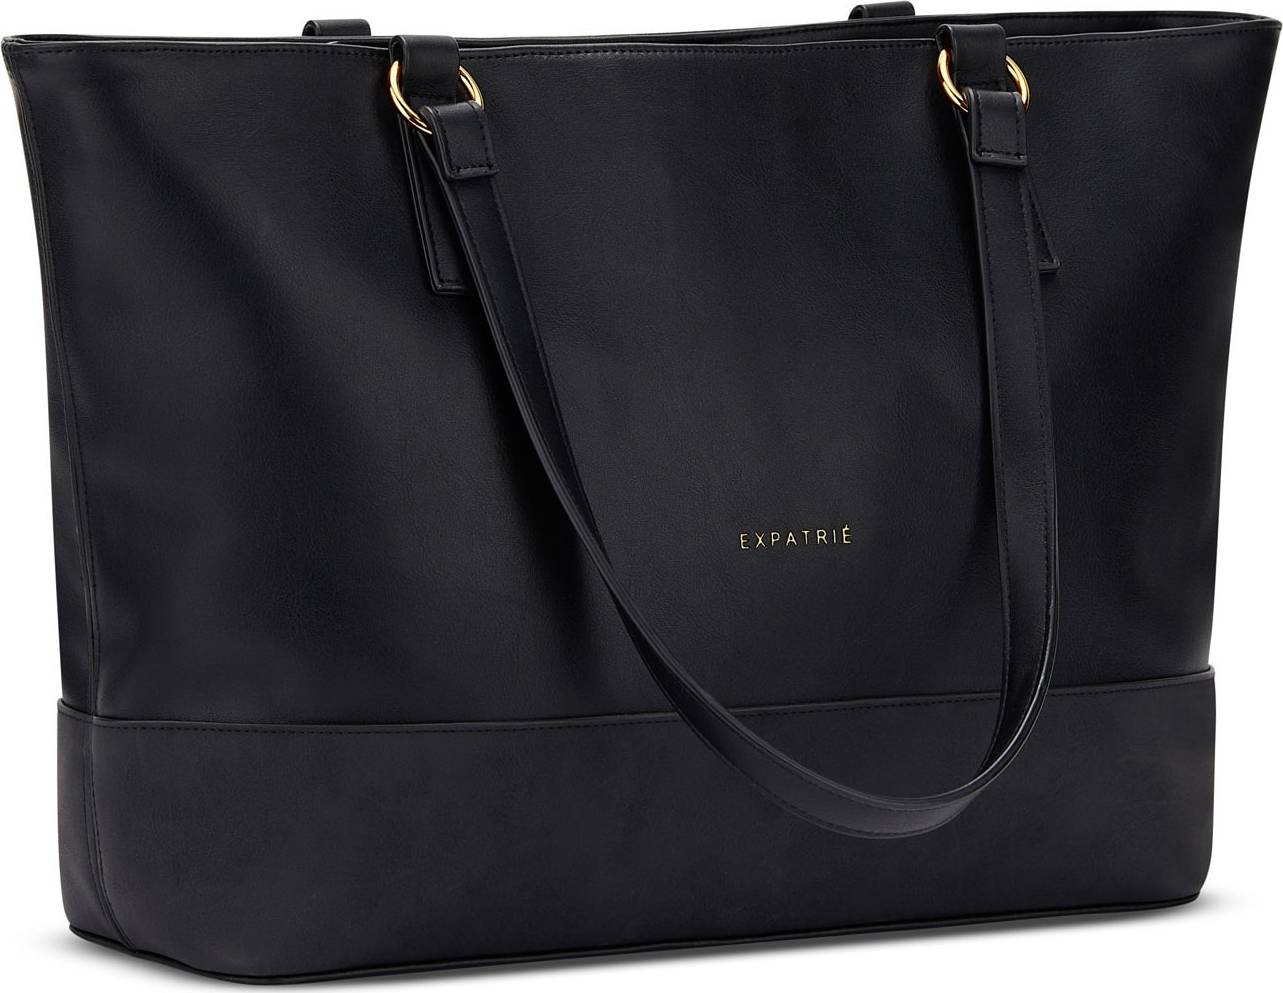 Expatrié Nákupní taška 'Nicole' černá